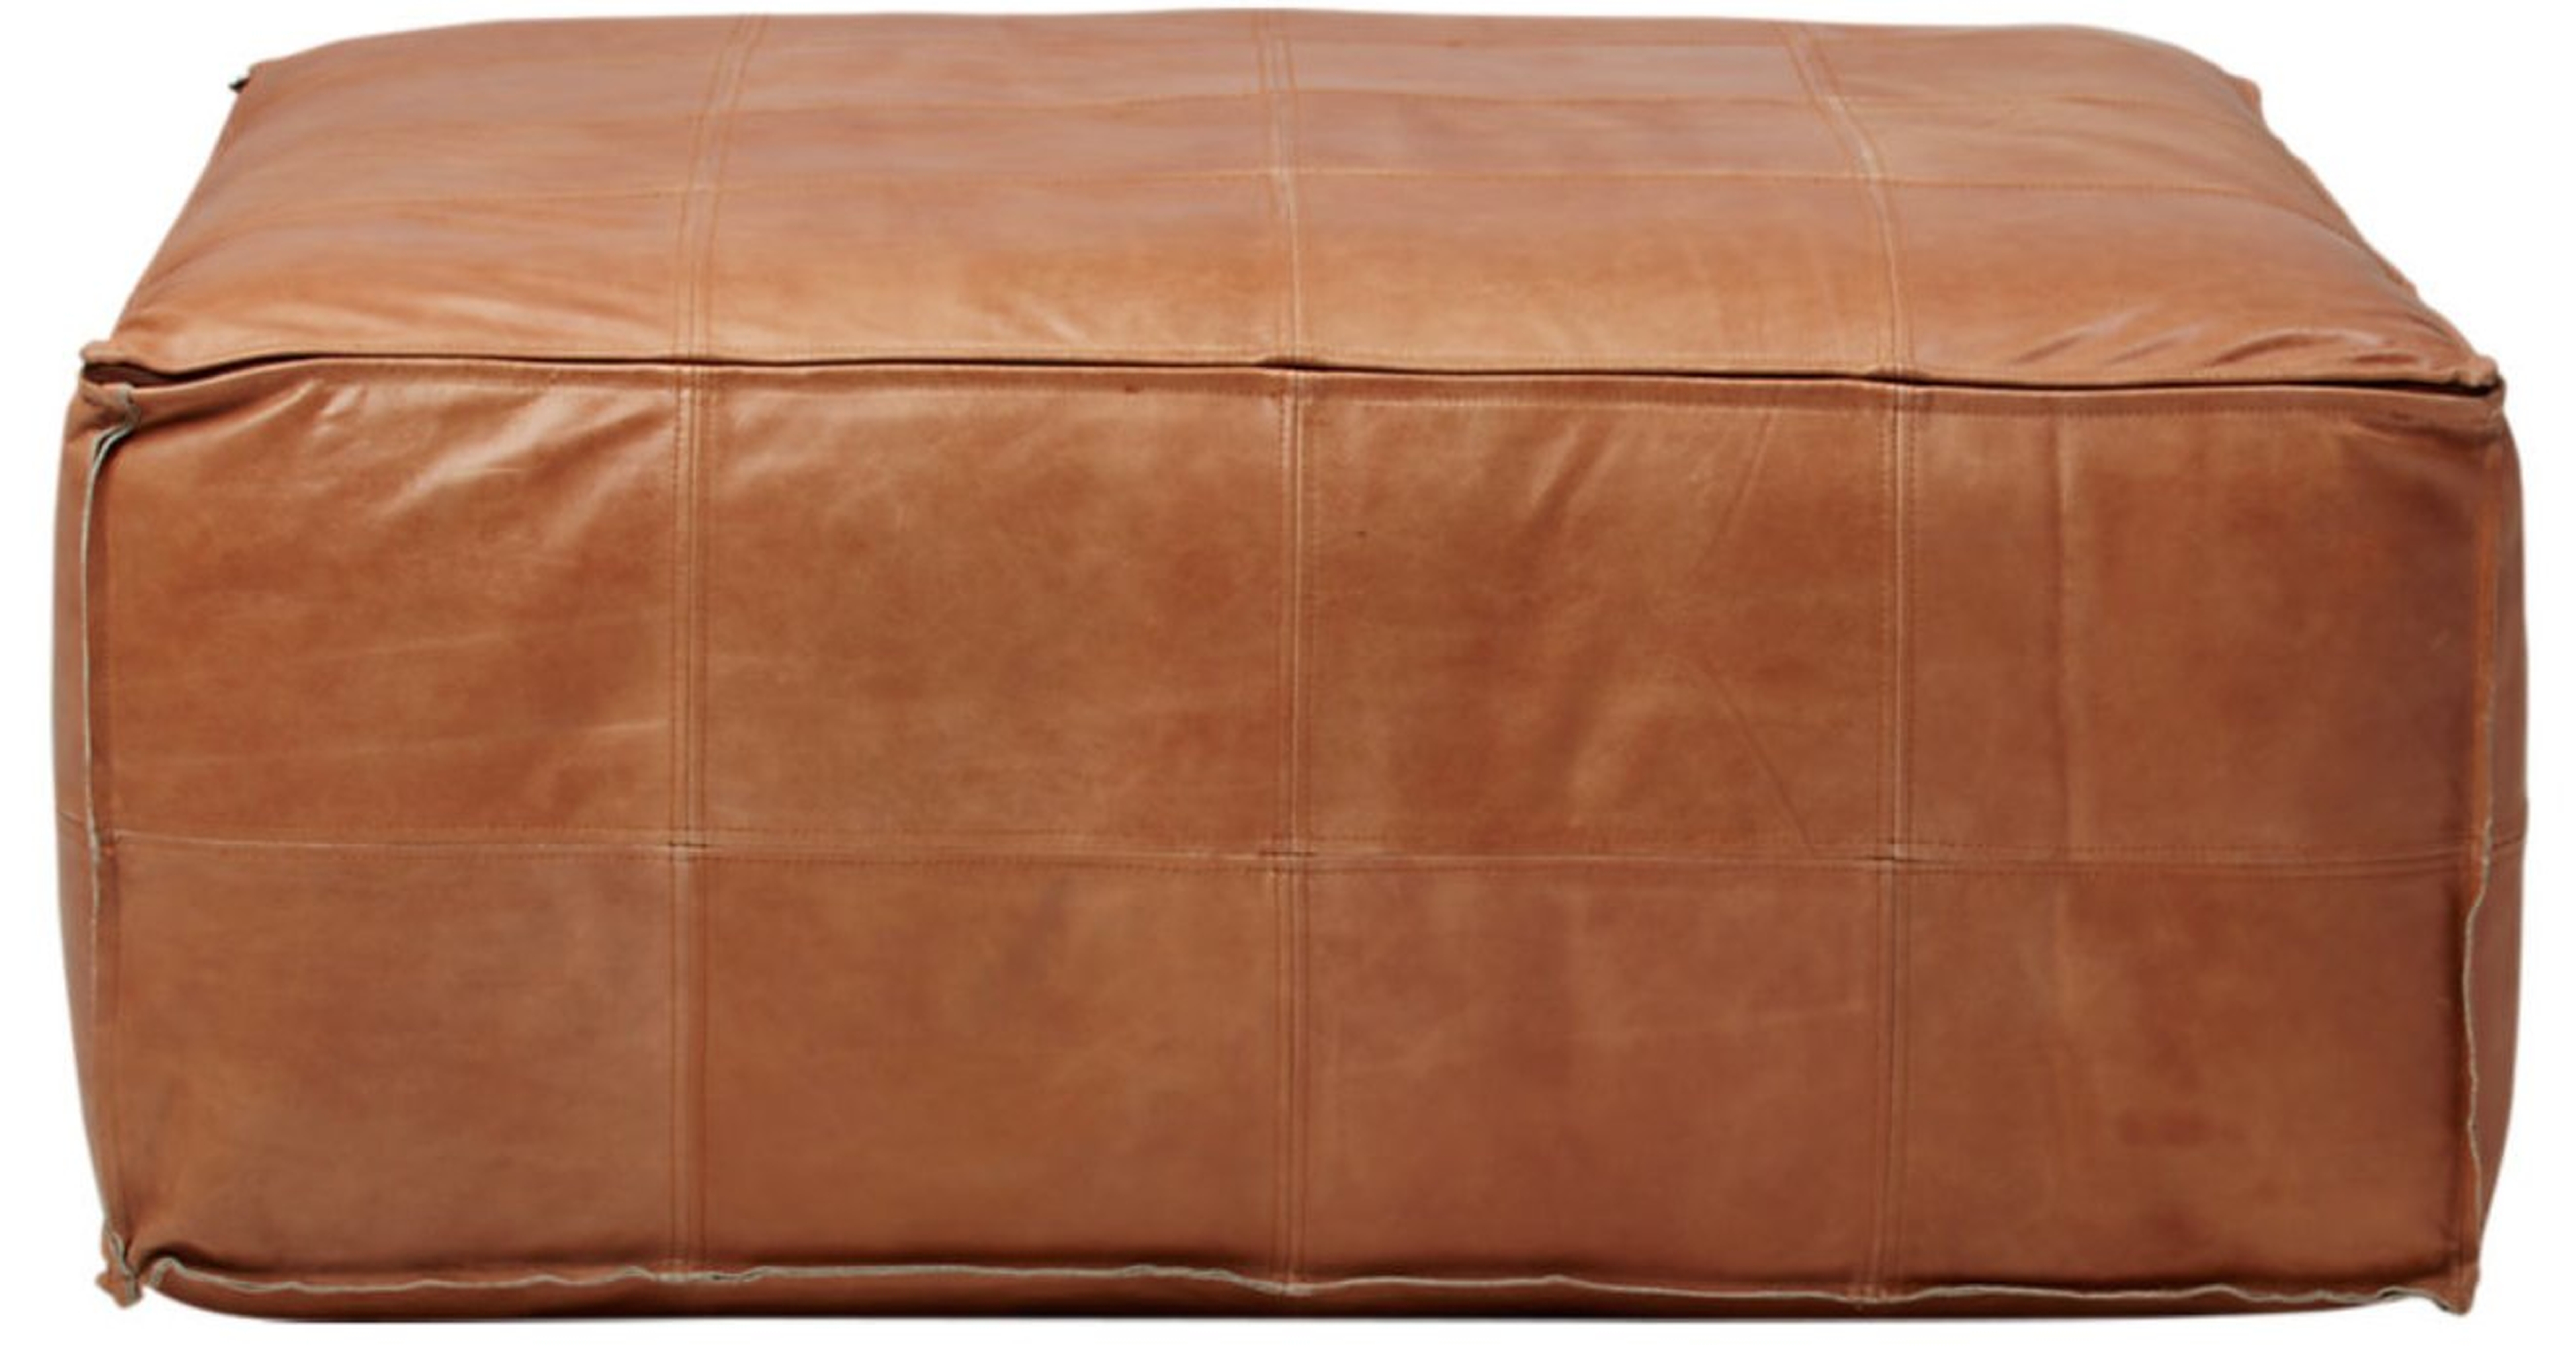 leather ottoman-pouf - 36X36 - CB2